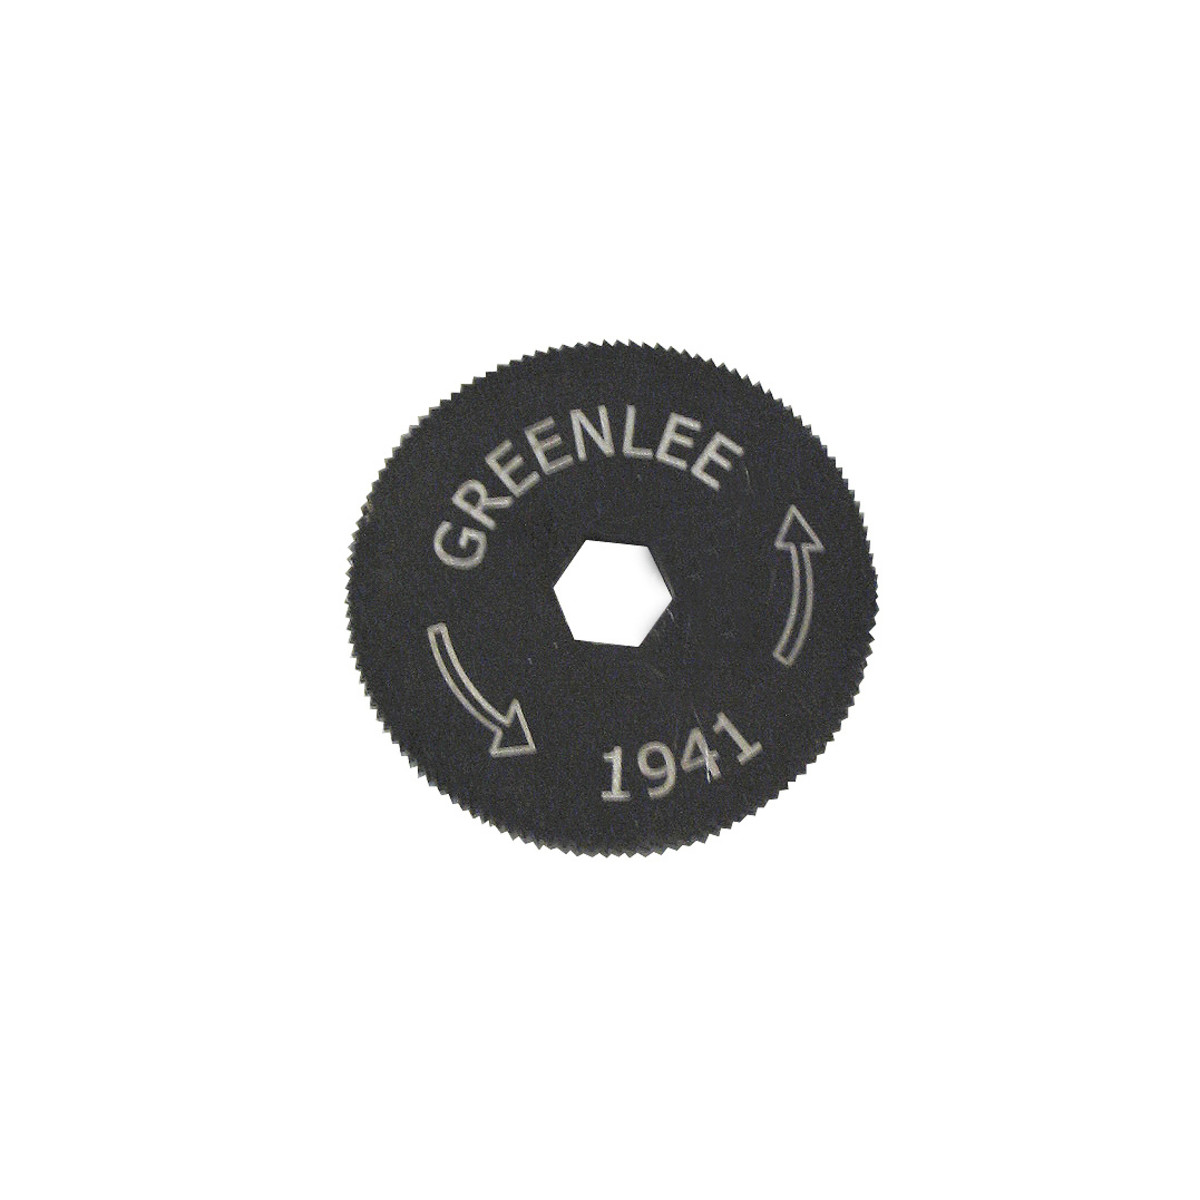 Greenlee® 1941-1